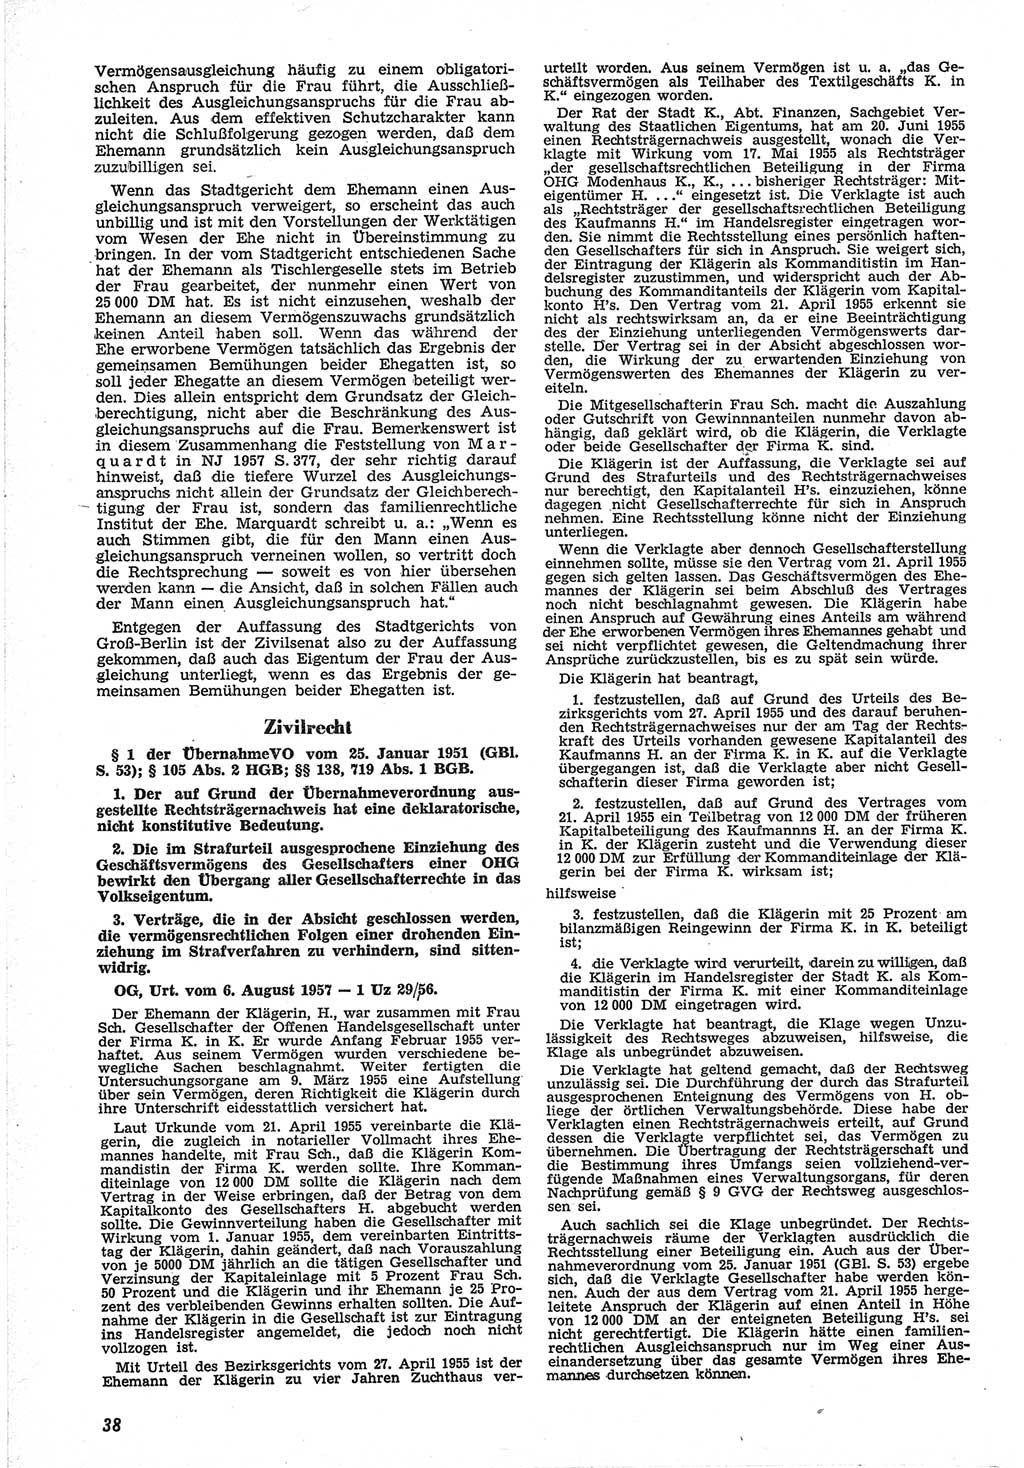 Neue Justiz (NJ), Zeitschrift für Recht und Rechtswissenschaft [Deutsche Demokratische Republik (DDR)], 12. Jahrgang 1958, Seite 38 (NJ DDR 1958, S. 38)